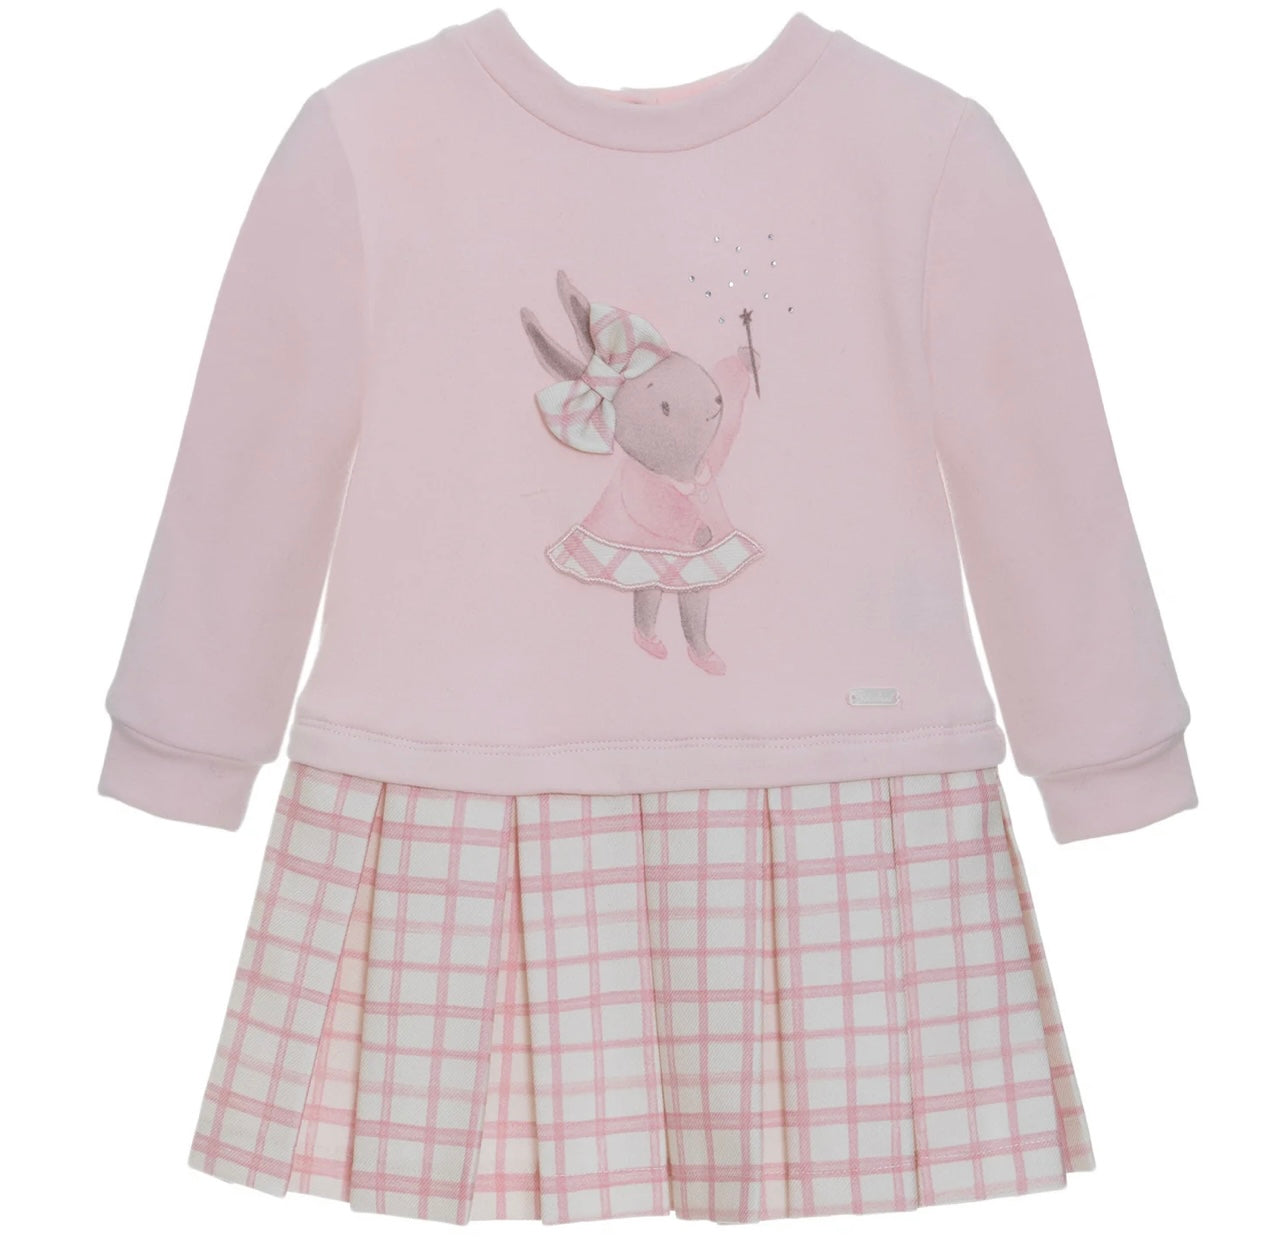 AW23 Patachou Pink & White Check Bunny Motif Dress